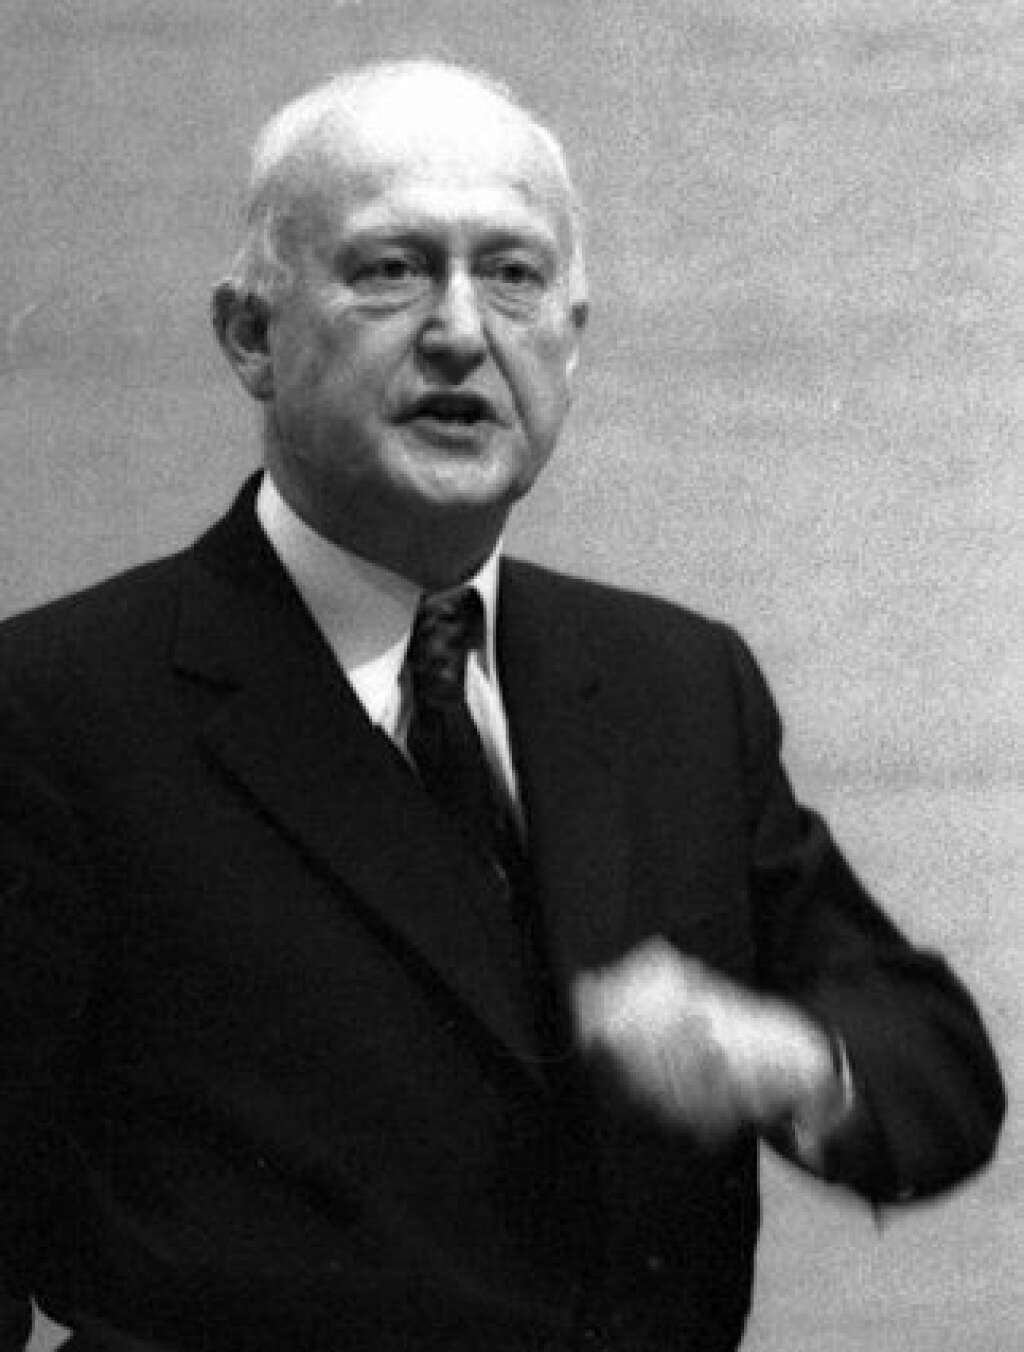 6- Pierre Pfimlin (32 jours) - Ministre de la Coopération de Pompidou, Pierre Pfimlin, avait renoncé à son maroquin en mai 1962, 32 jours après sa nomination, pour protester contre les propos du général de Gaulle hostiles à l'intégration européenne.